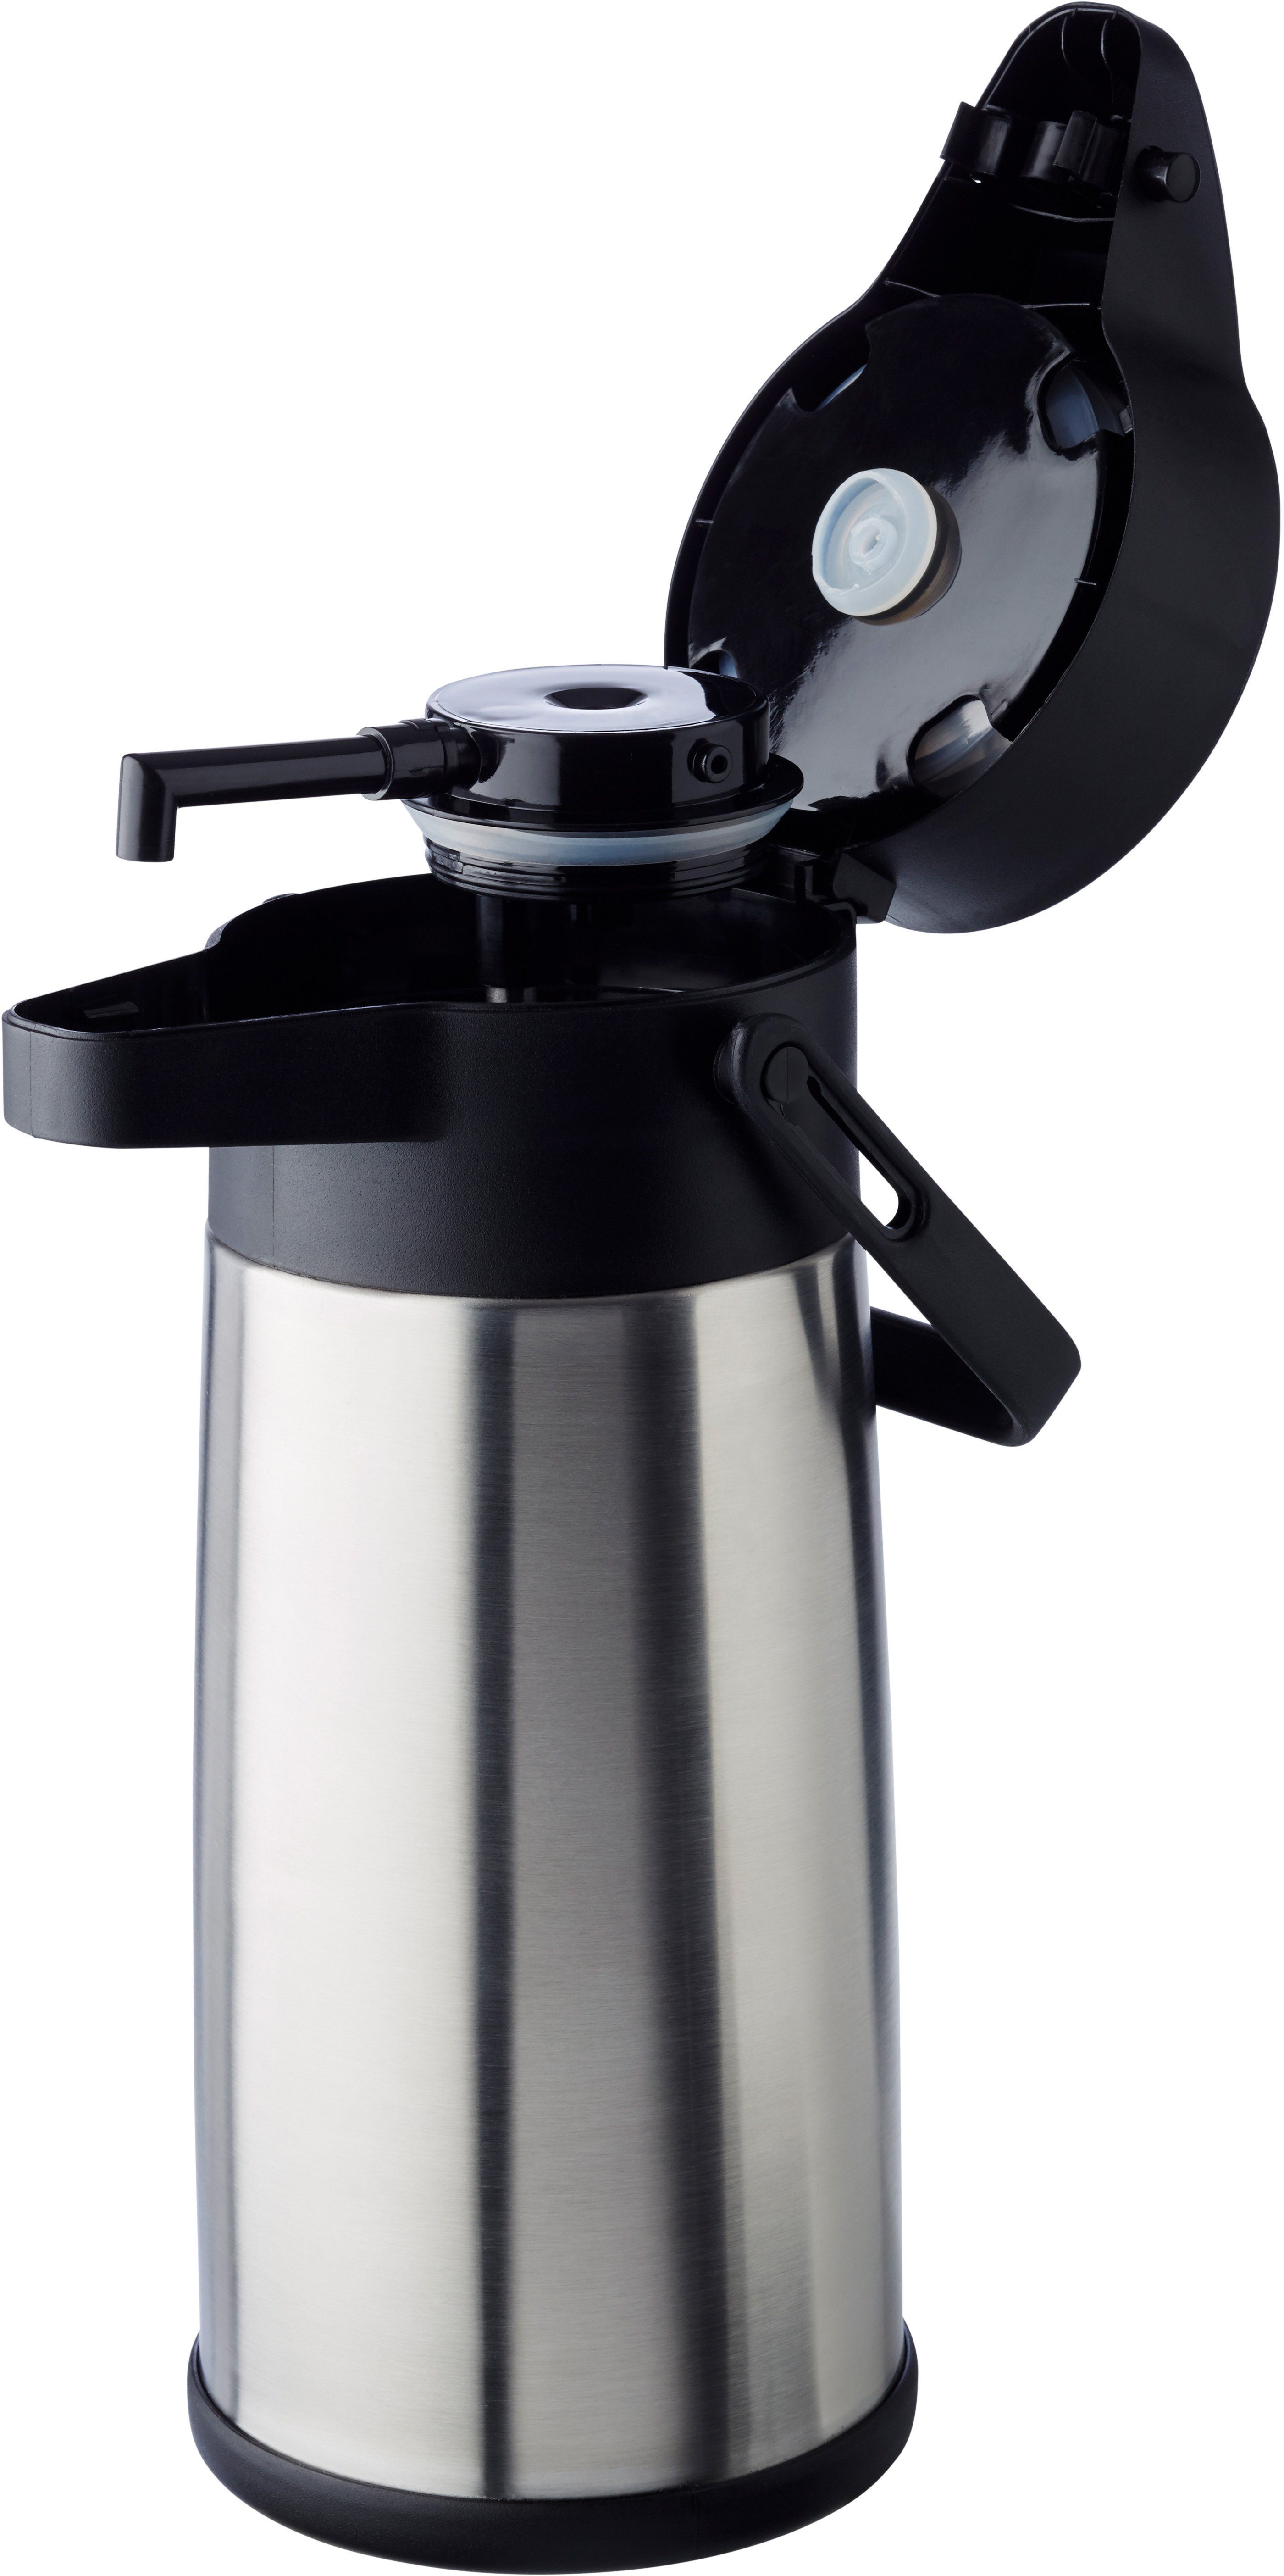 APS Pump-Isolierkanne Isolierung 2,2 l, bis Kaffee, zu 17 Tassen doppelwandige Budget, Dreh-Pumpknopf, für